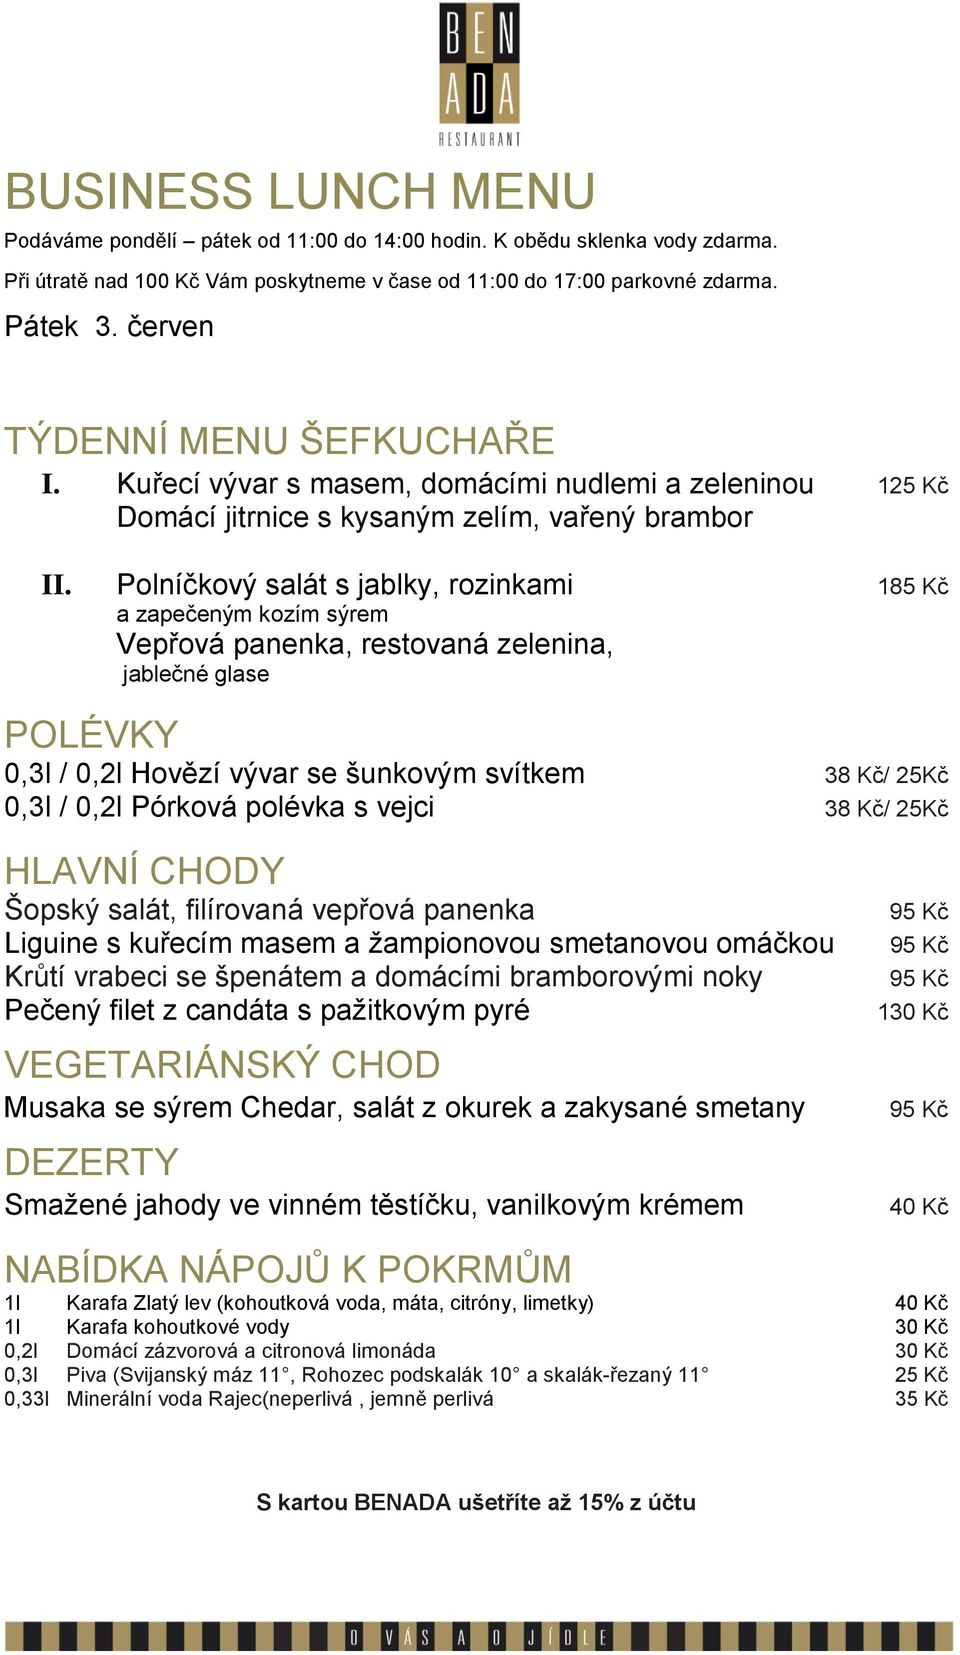 vejci 38 Kč/ 25Kč Šopský salát, filírovaná vepřová panenka Liguine s kuřecím masem a